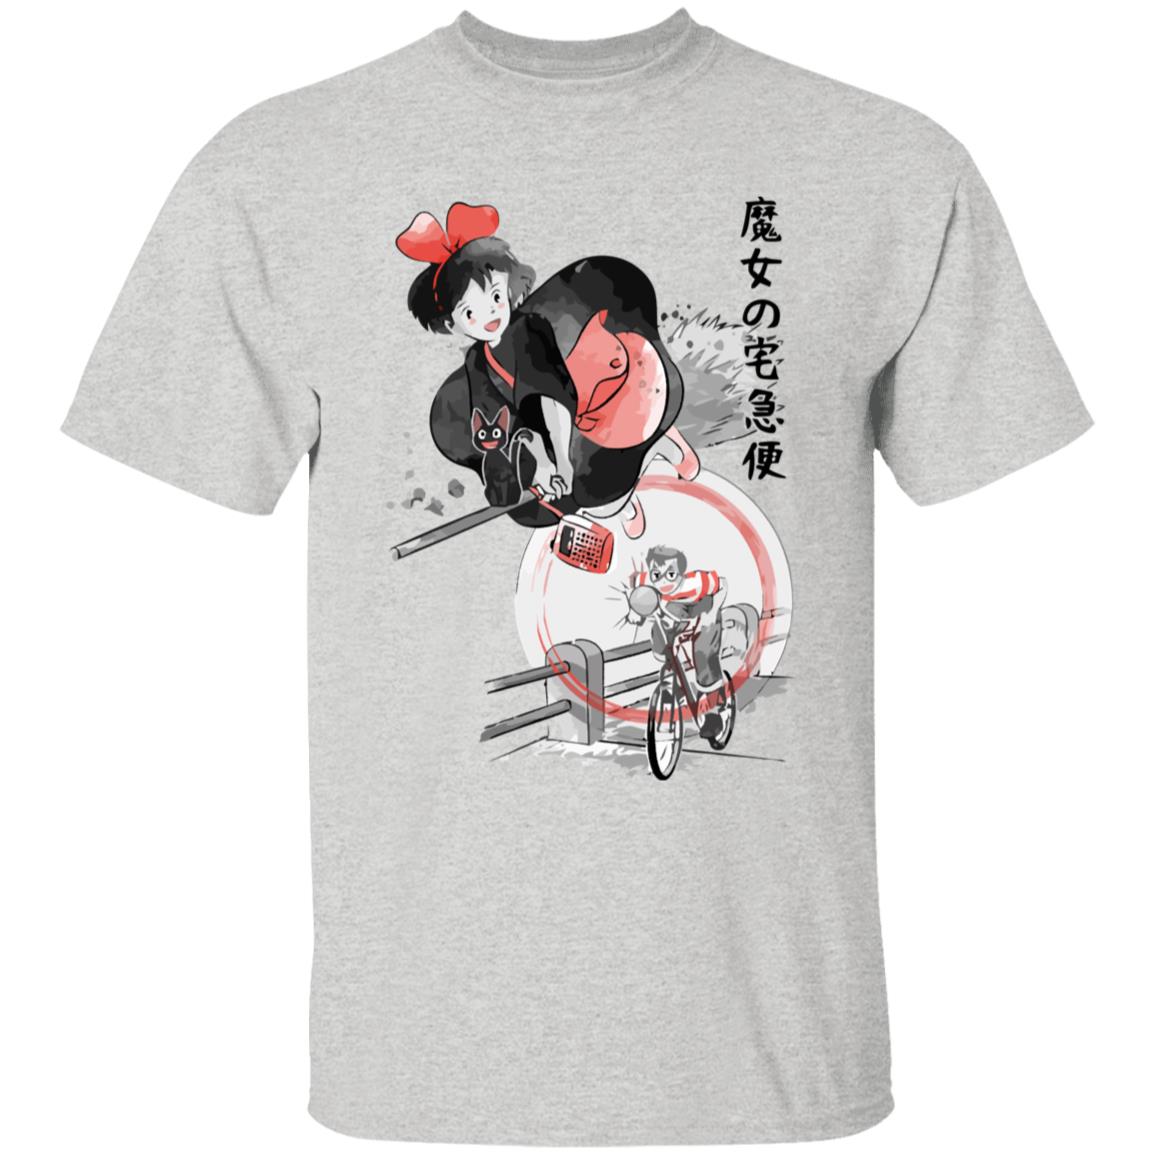 Kiki’s Delivery Service – Kiki & Tombo Kid T Shirt